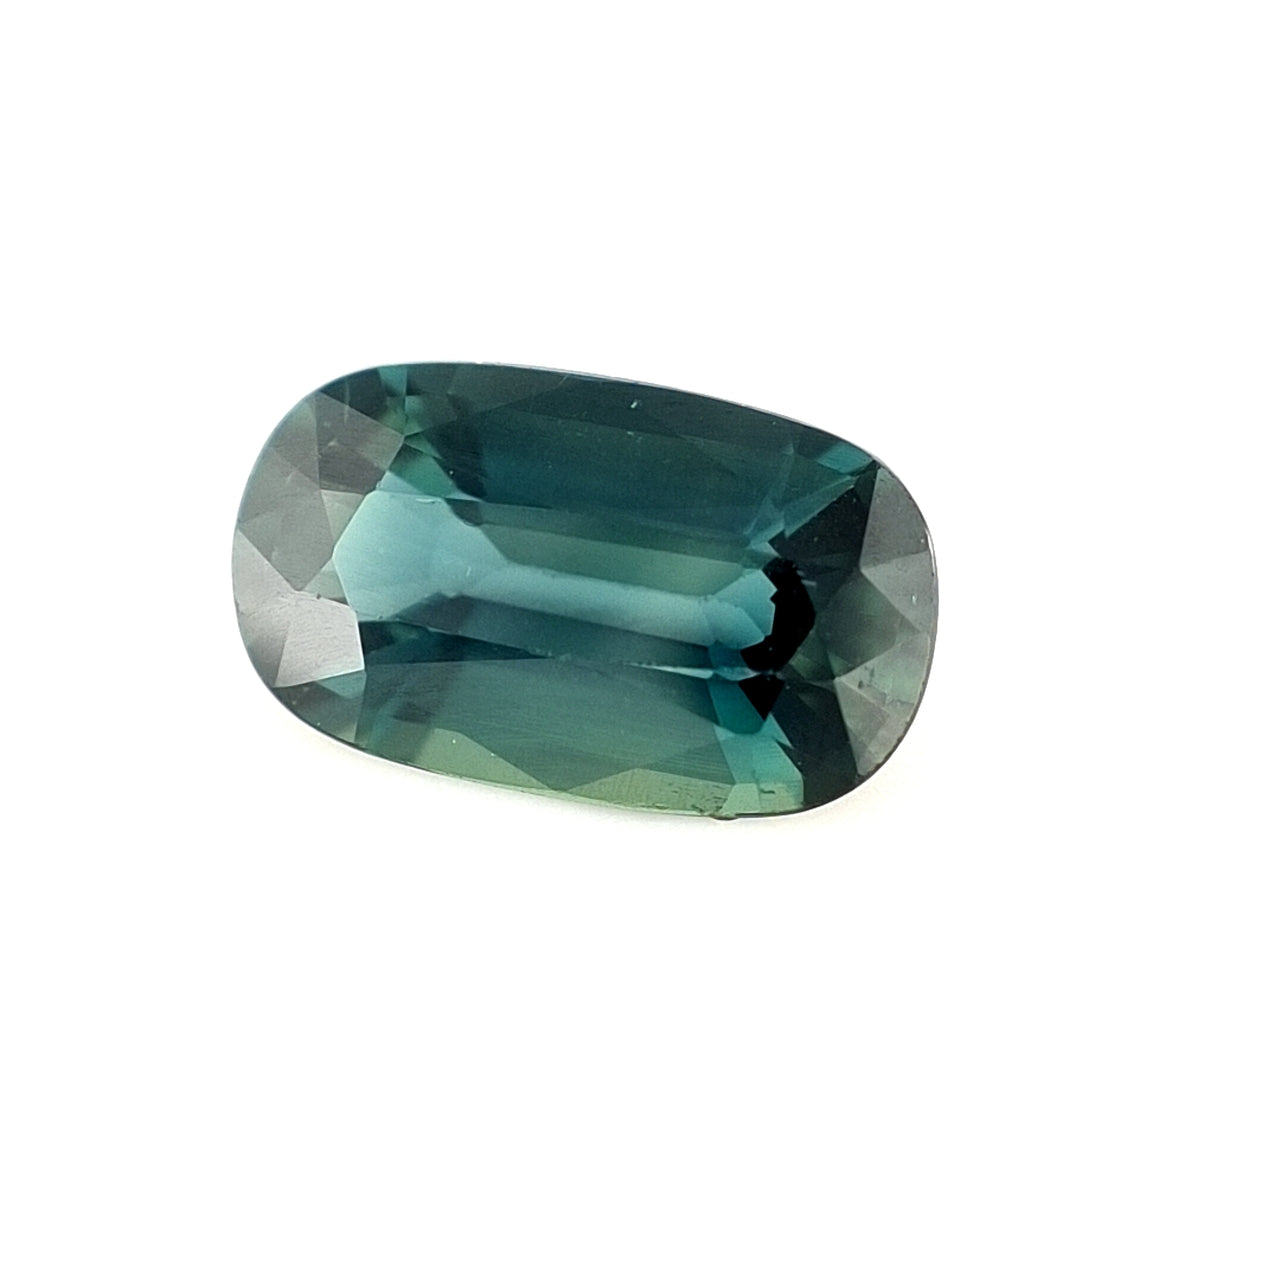 2.38ct Australian Sapphire, Blue, Teal - Cushion Cut